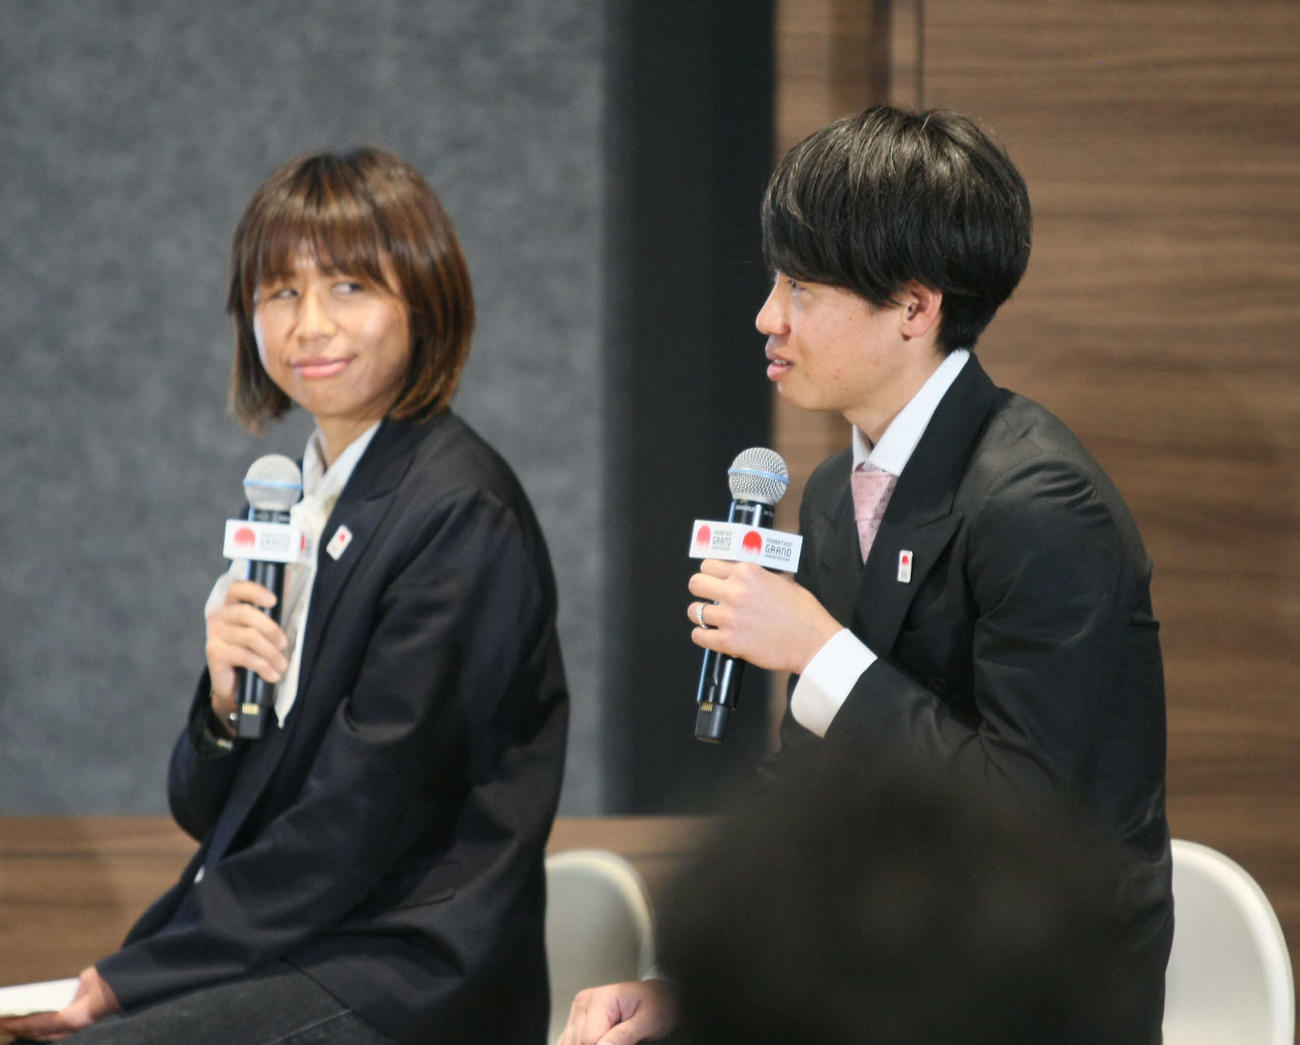 マラソングランドチャンピオンシップ（MGC）コース発表会見に登壇した福士加代子（左）と鎧坂哲哉